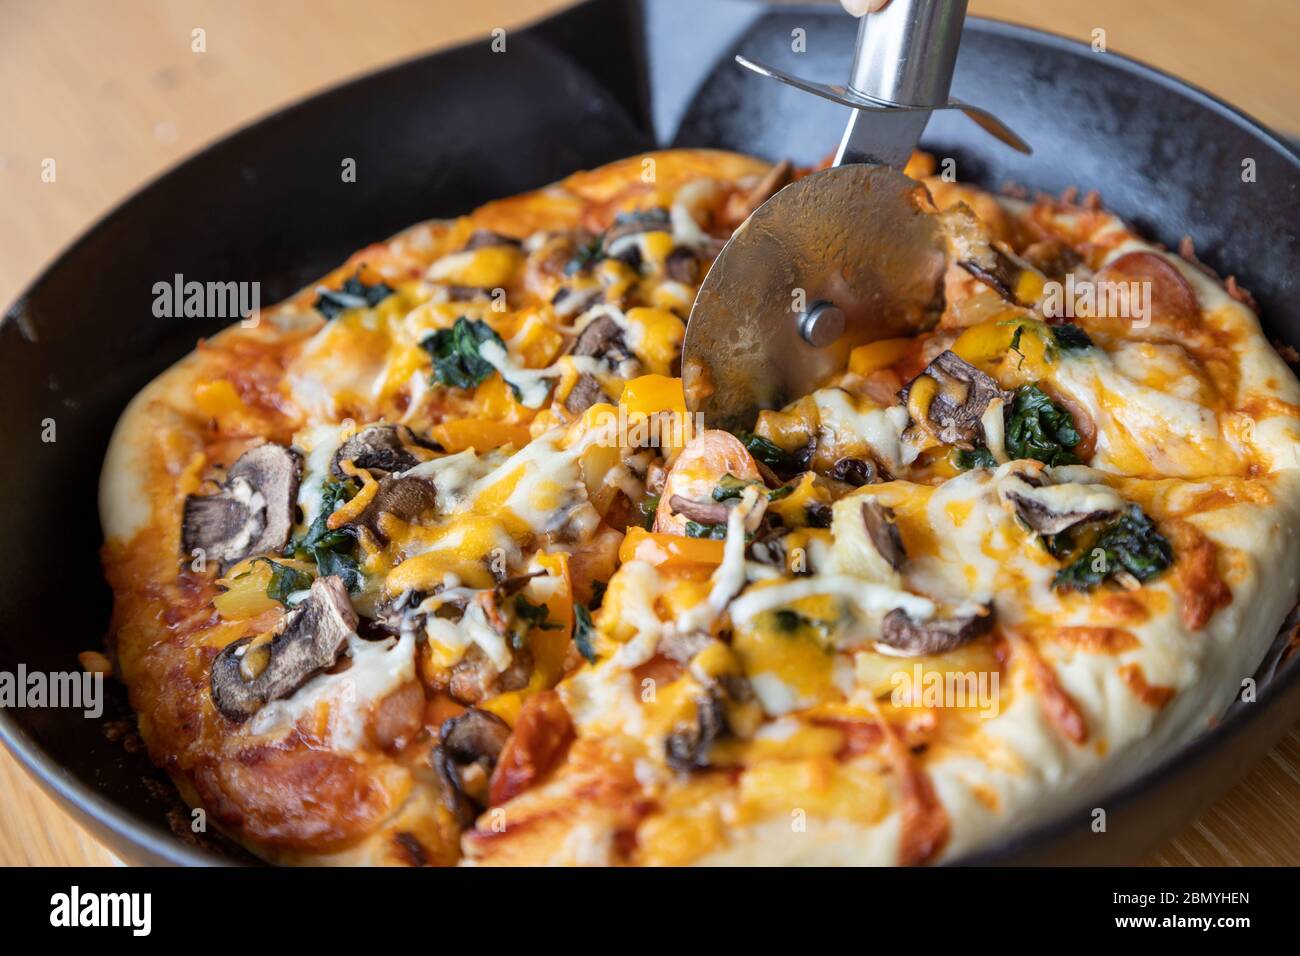 Coupe-pizza trancheuse de pizza végétarienne maison avec champignons, épinards, oignon, fromage, poivron et variété de garnitures de légumes et de h aromatique Banque D'Images